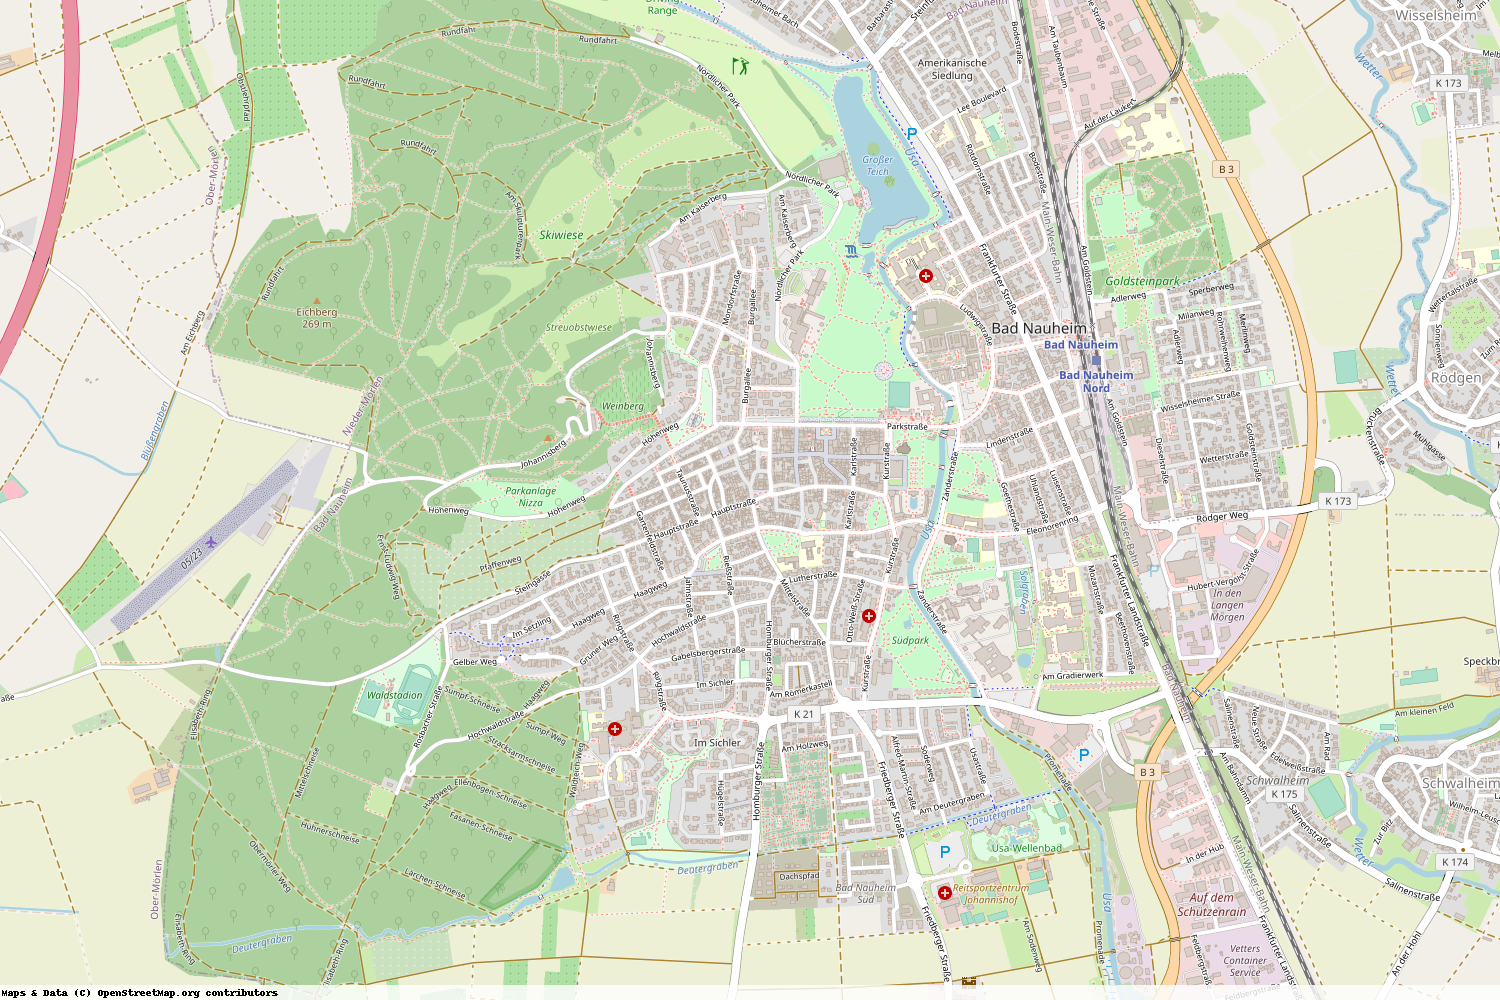 Ist gerade Stromausfall in Hessen - Wetteraukreis - Bad Nauheim?